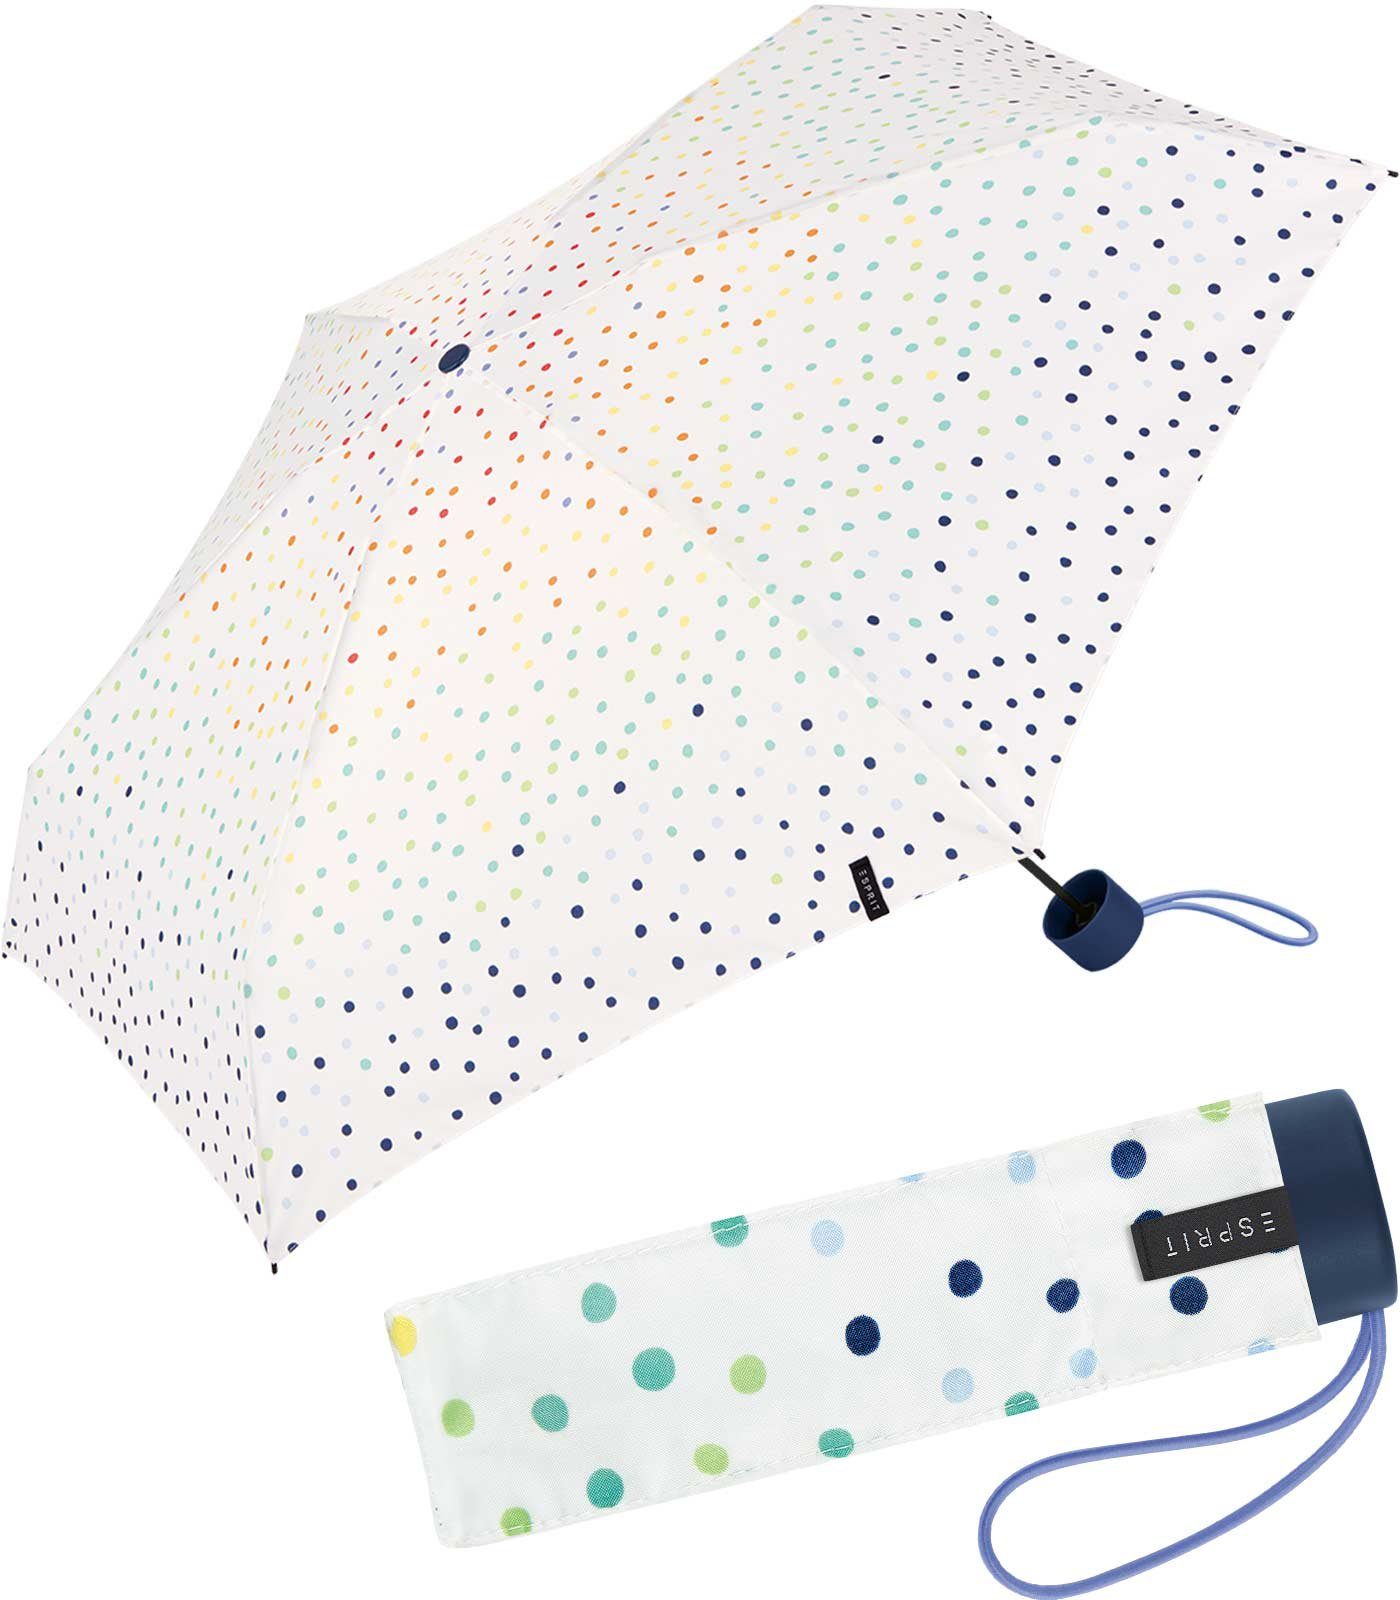 Esprit Langregenschirm Damen-Taschenschirm klein und stabil, farbenfroh  bedruckt mit kleinen Punkten